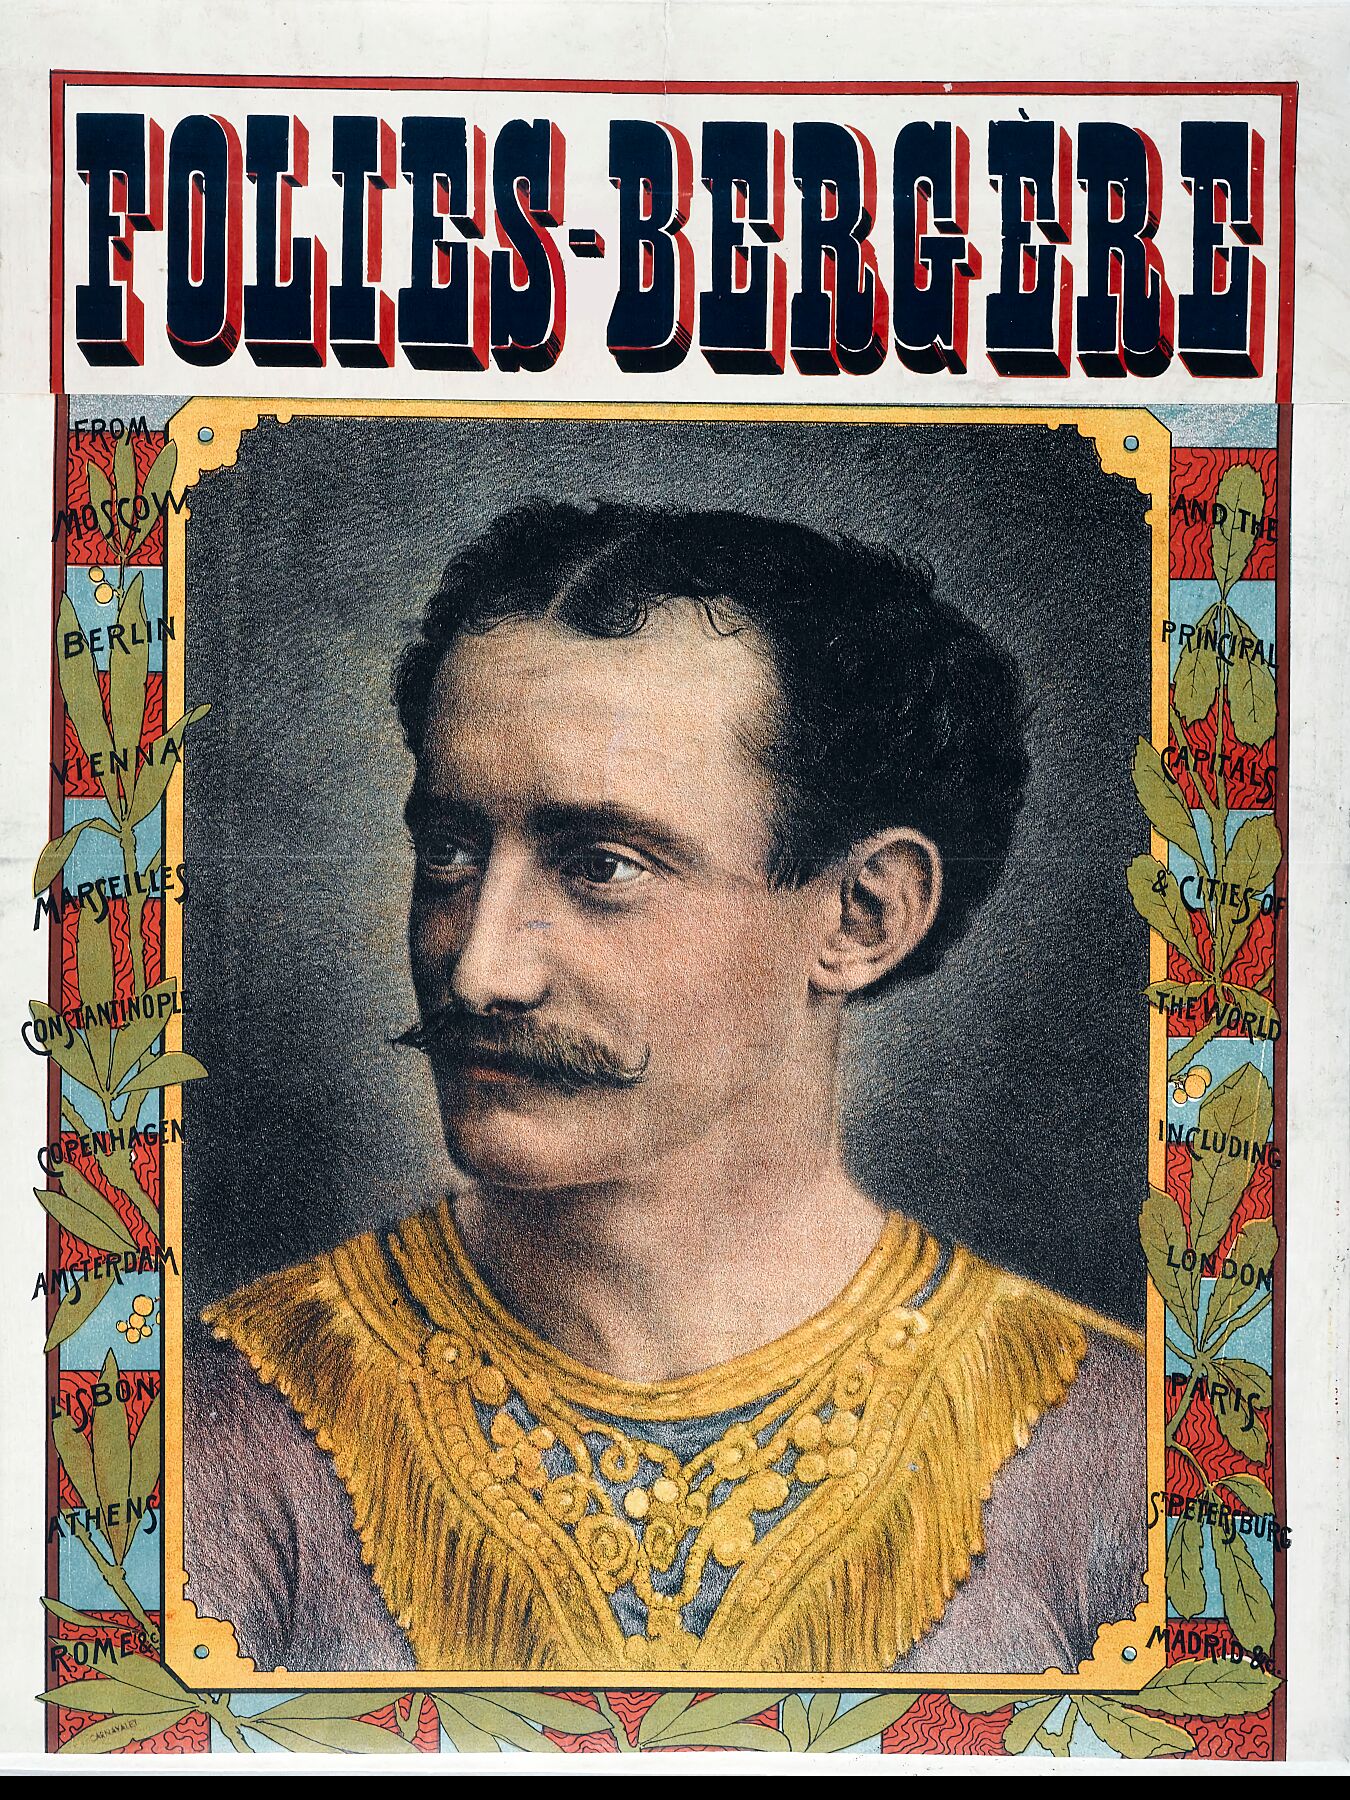 Folies-Bergère Poster - c.1890